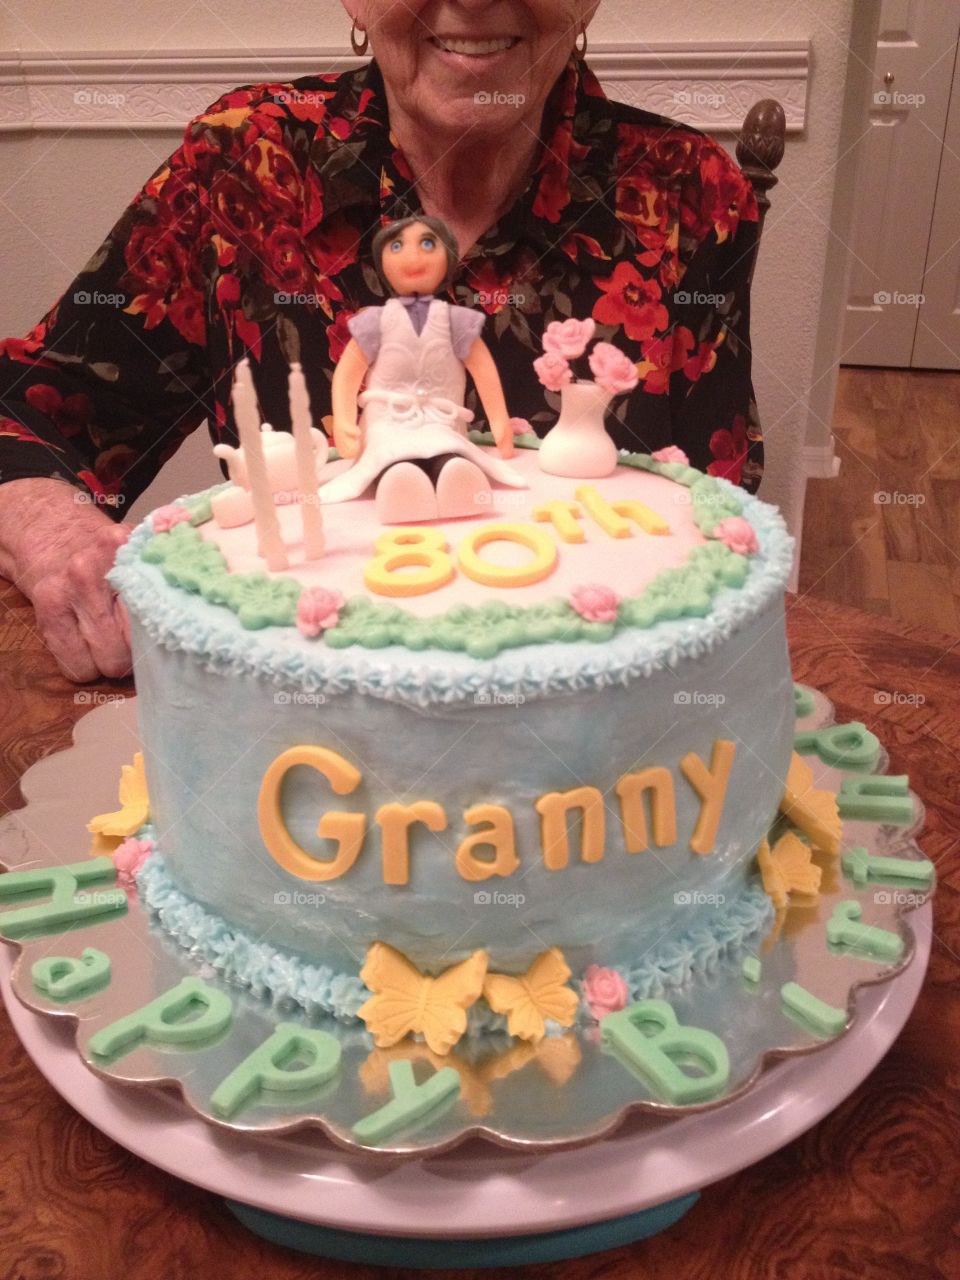 Grandma's Birthday Cake